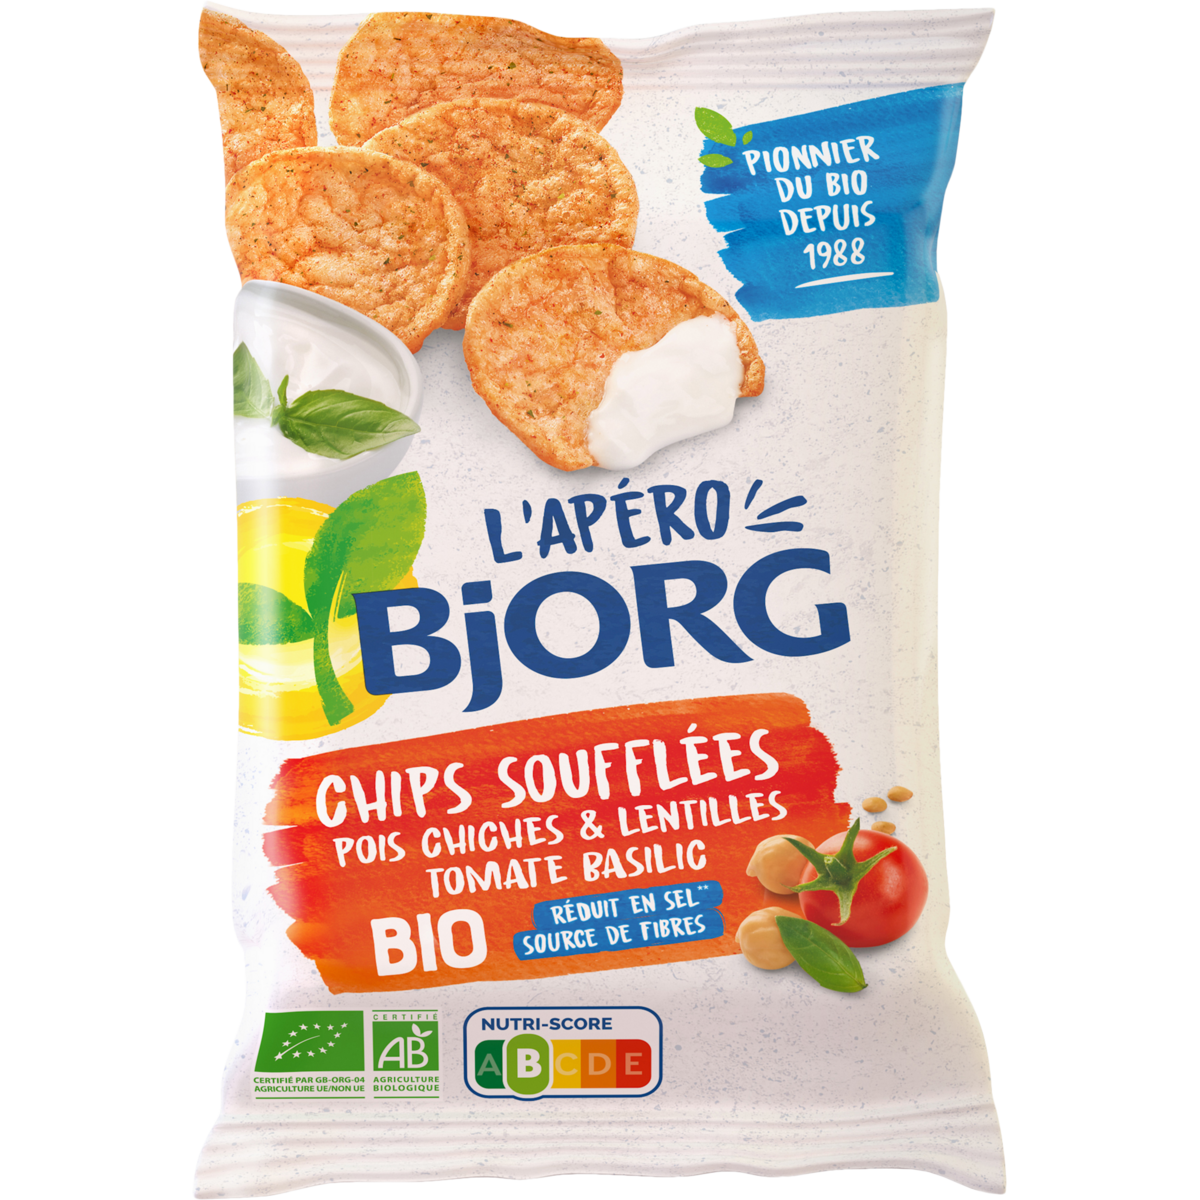 BJORG Chips soufflées pois chiches et lentilles tomate basilic réduites en sel bio 80g